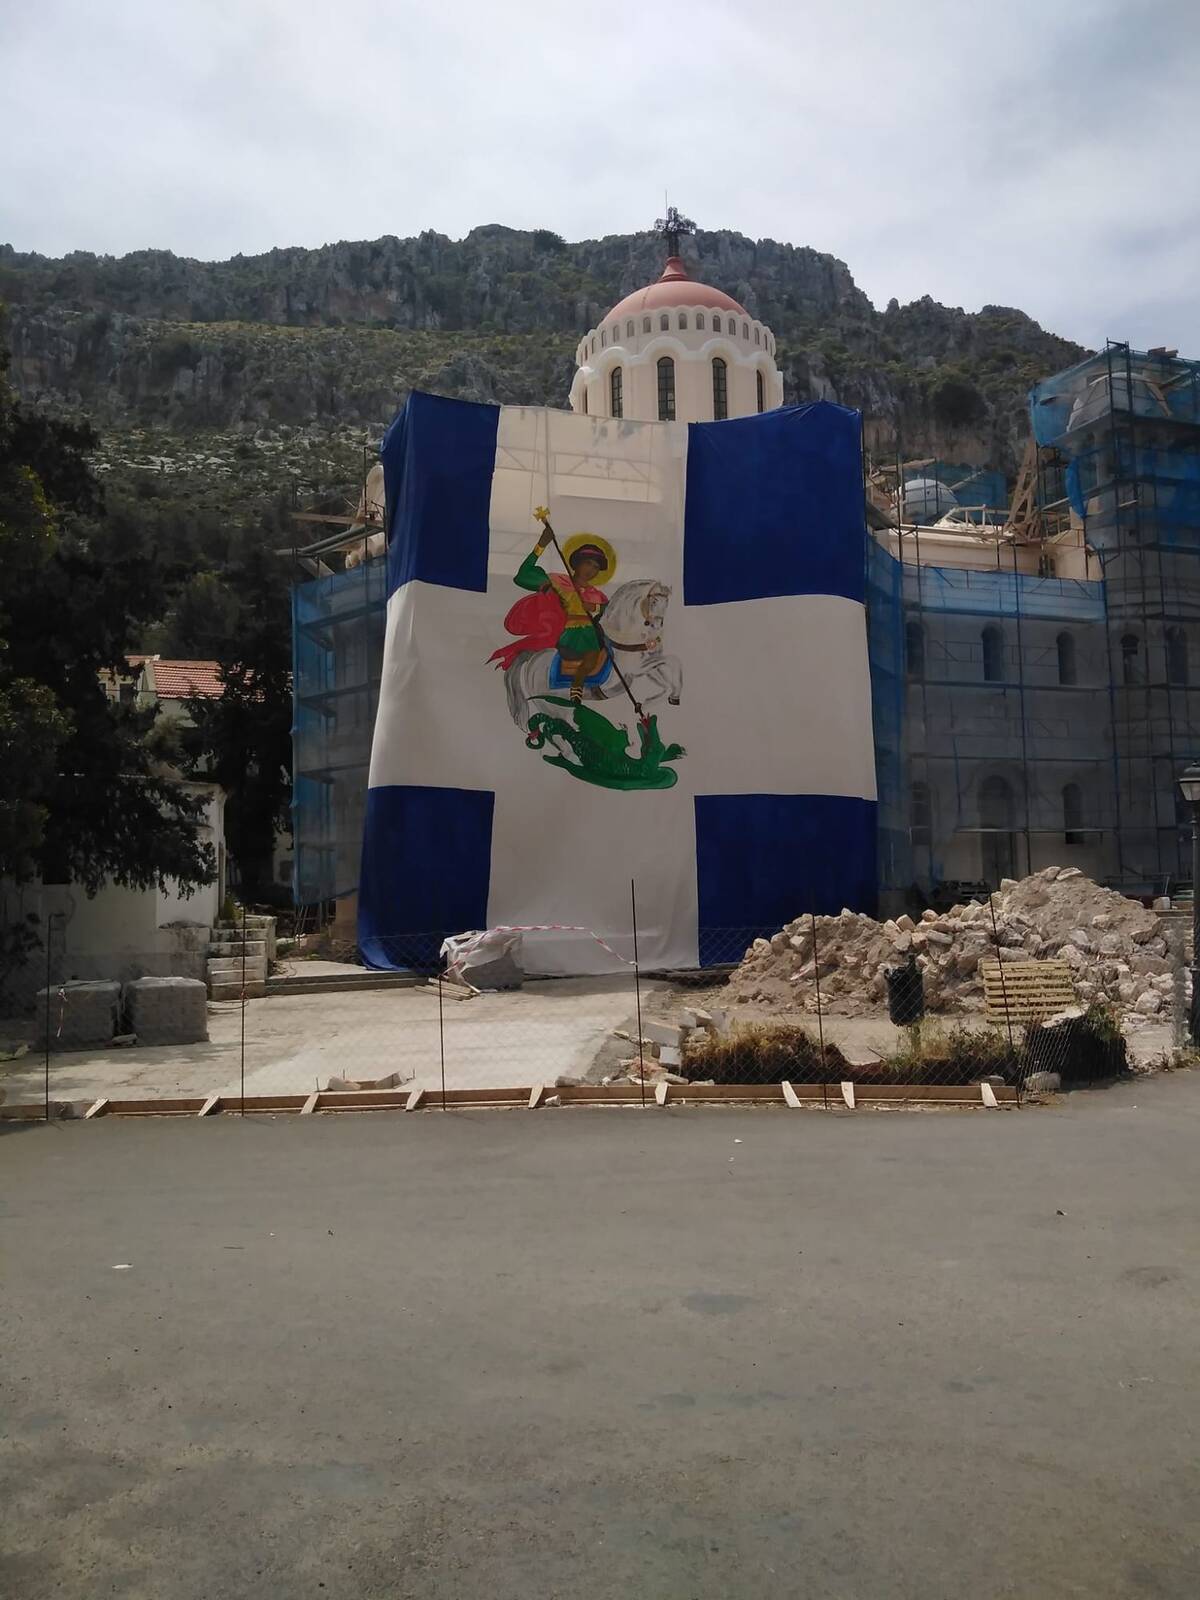 Στράτος Μυλωνάς : Ο άνθρωπος που ζωγράφισε τον Άγιο Γεώργιο στην τεράστια ελληνική σημαία που αναρτήθηκε στο Καστελόριζο